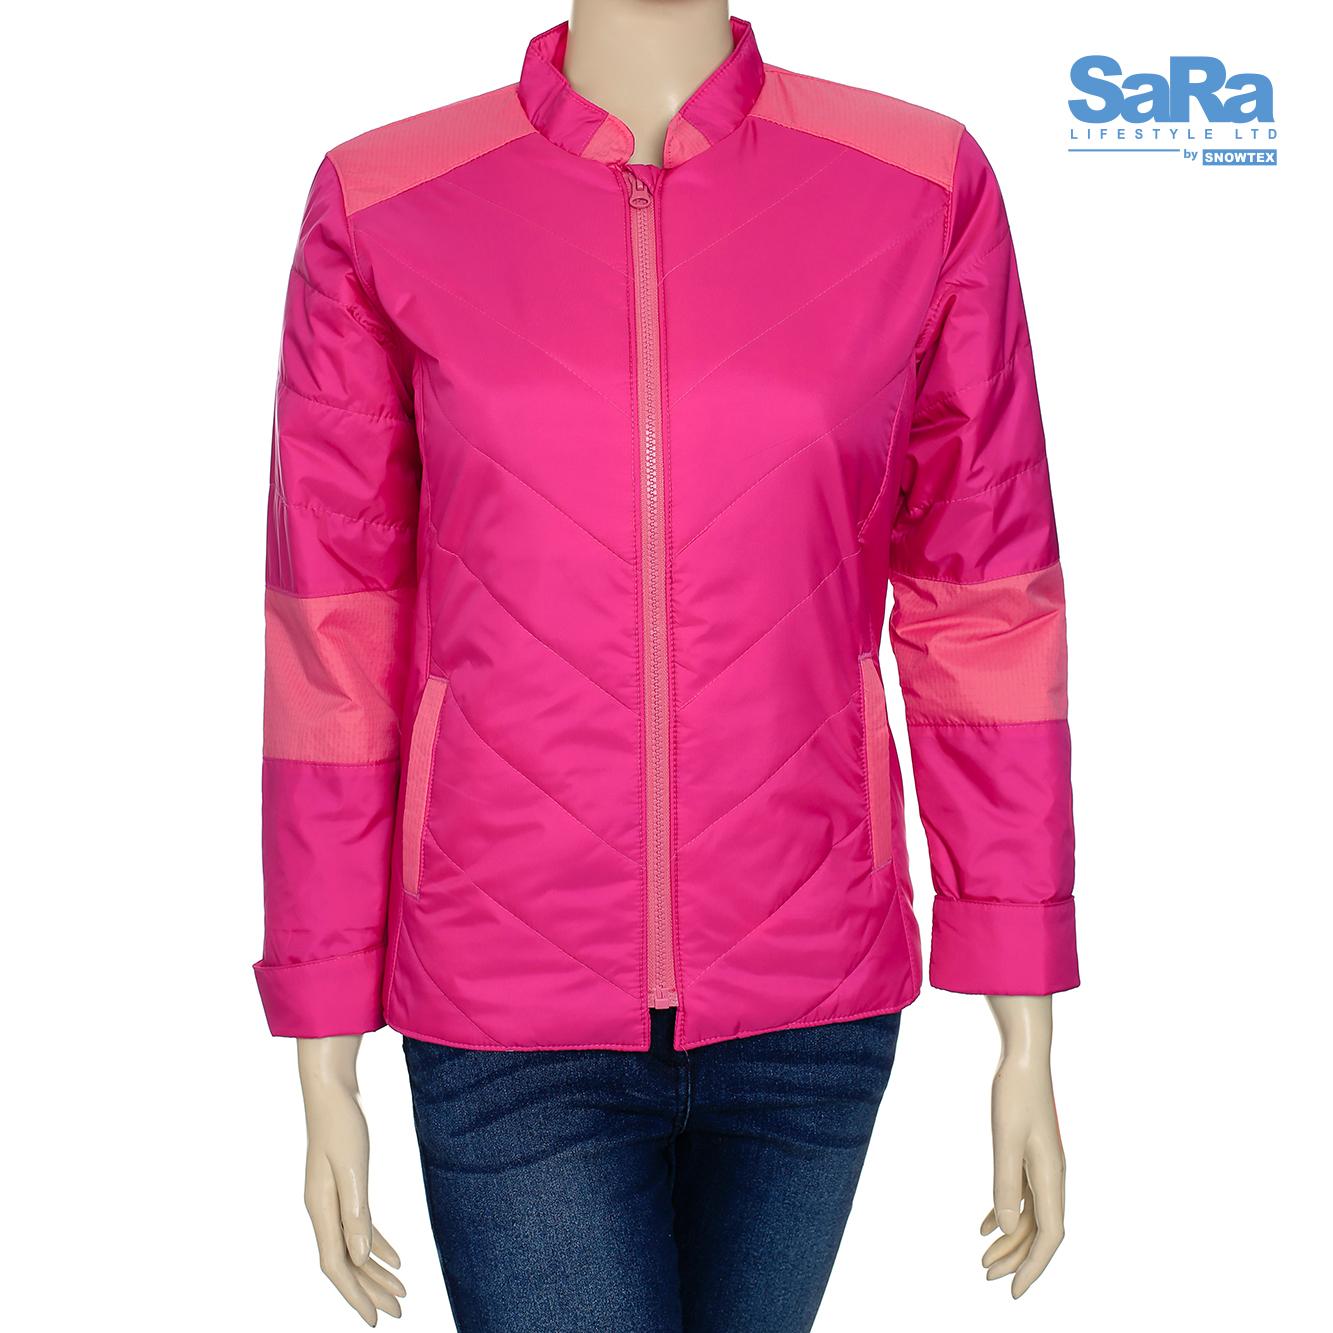 SaRa Hot Pink Navy Jacket for Women